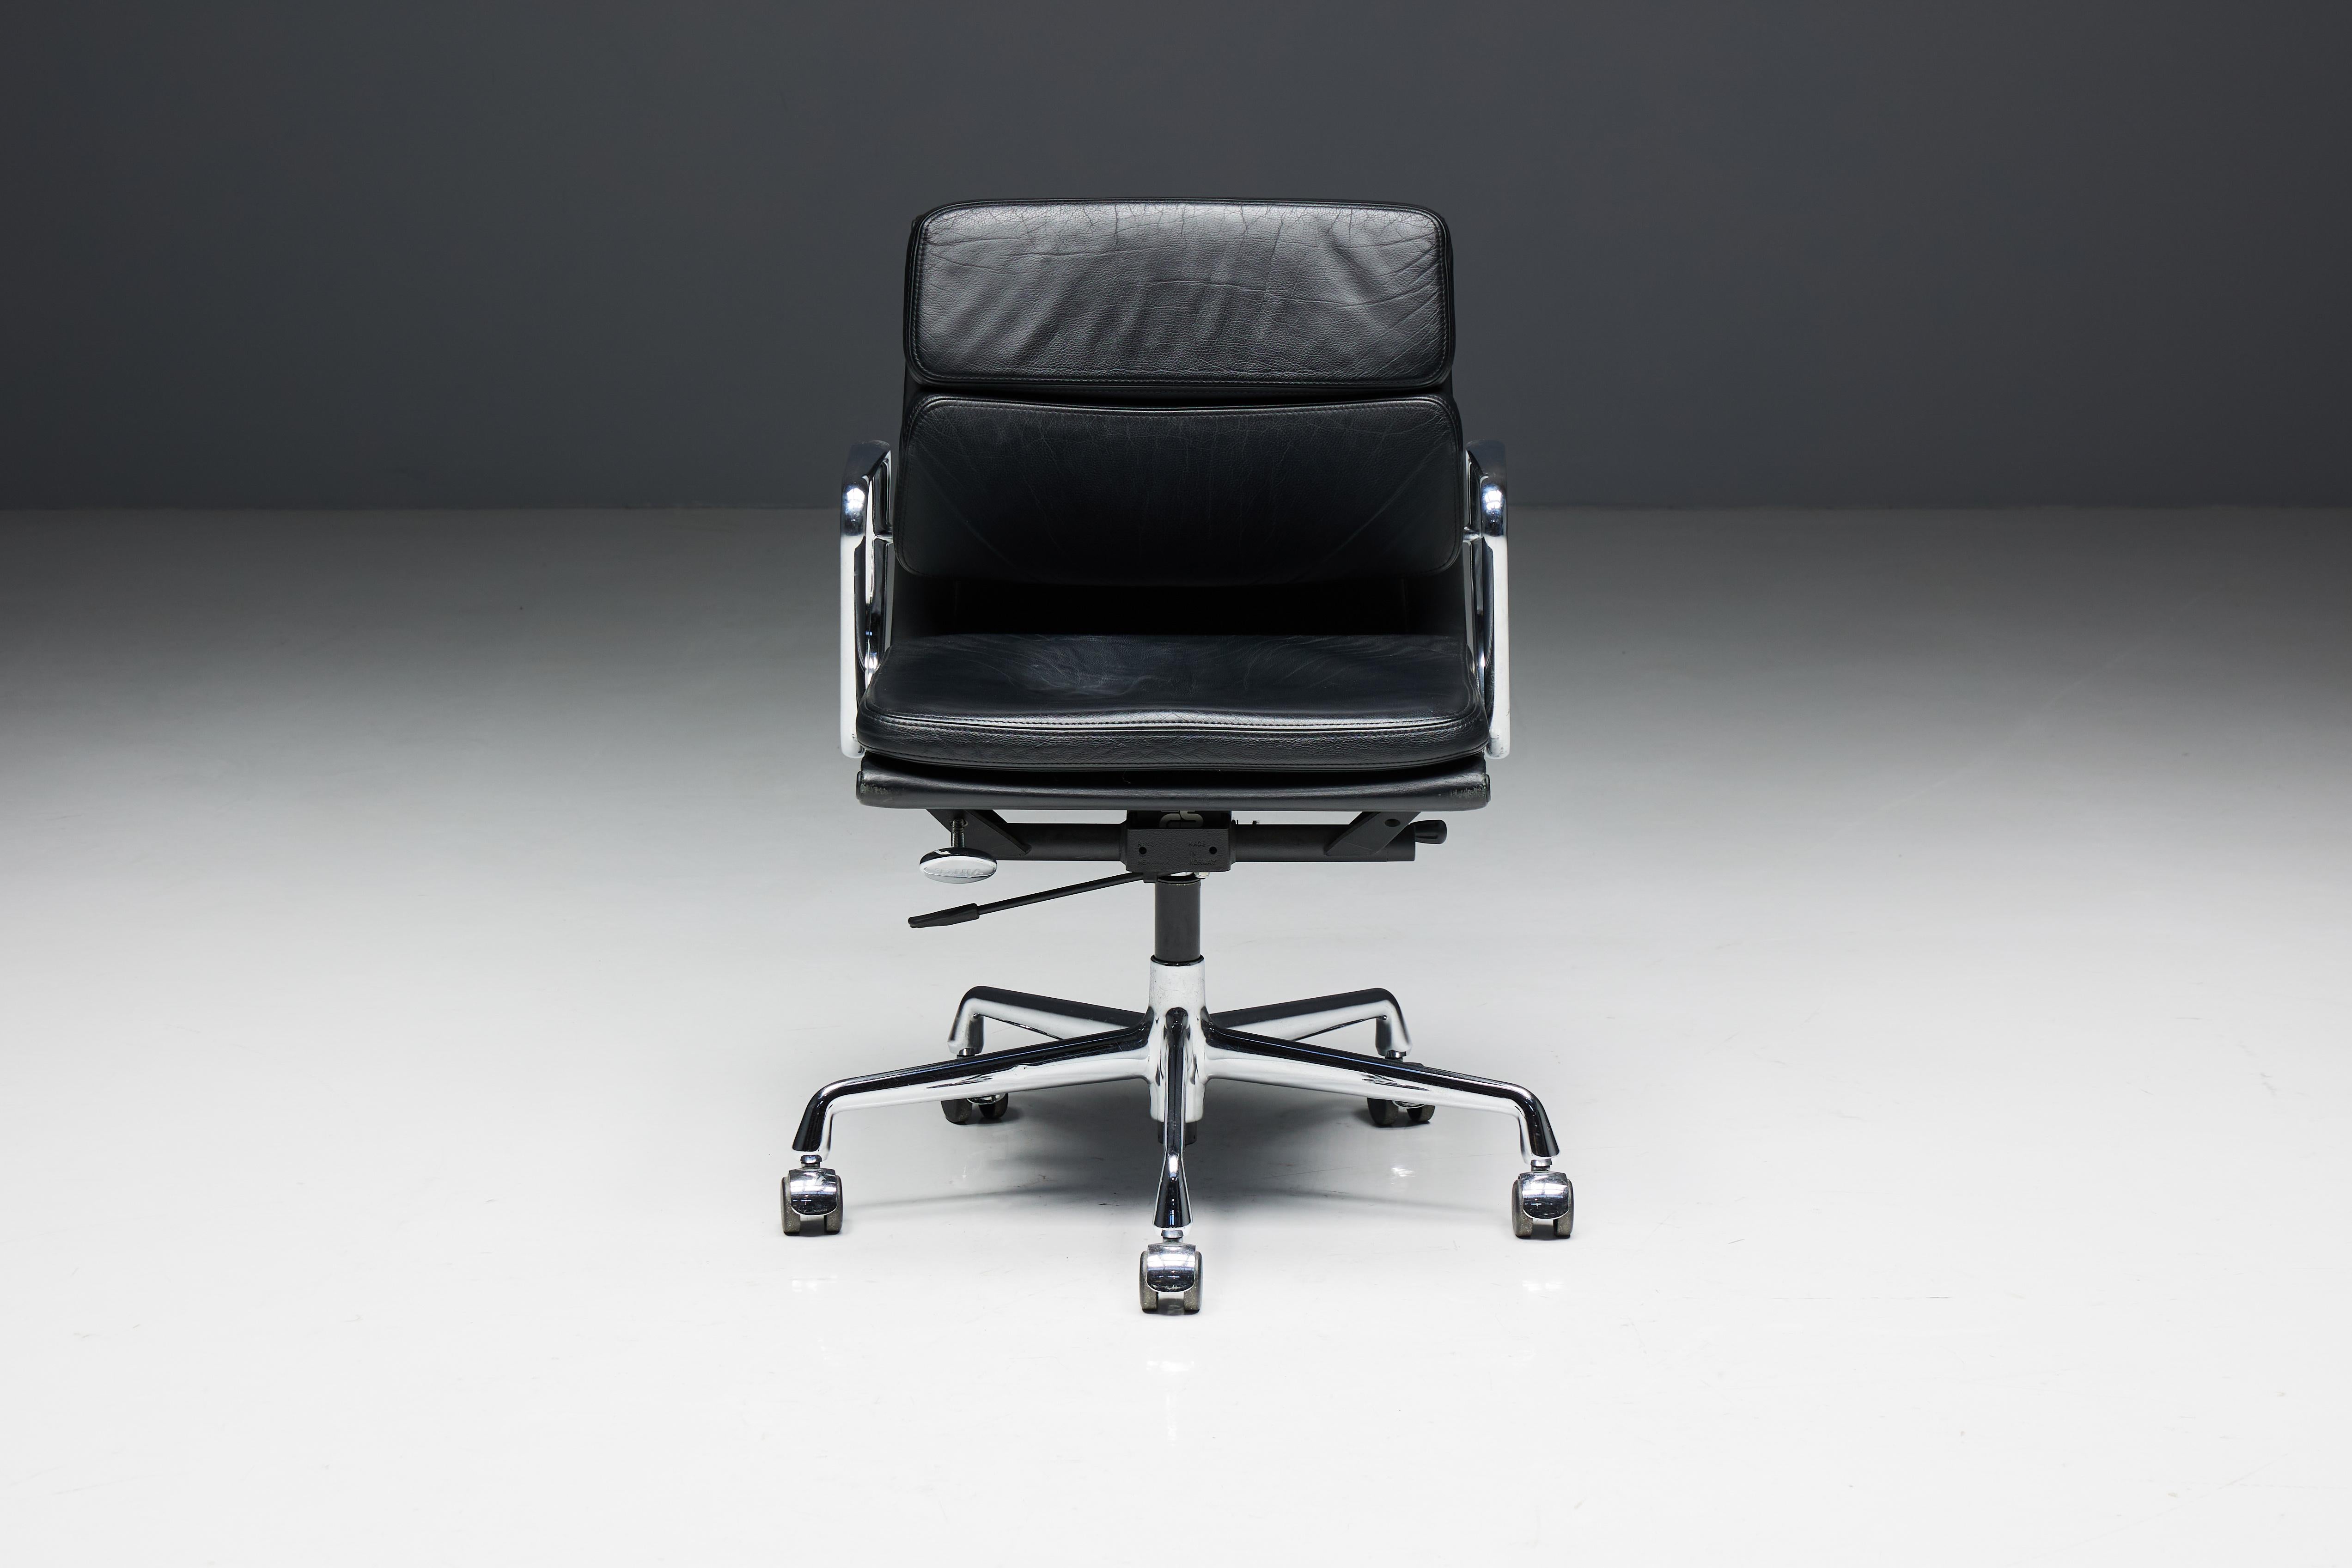 Chaise de bureau EA217 de Charles et Ray Eames, fabriquée par Vitra. Cette chaise distinguée est dotée d'une assise et d'un dossier élégants en cuir noir, complétés par une structure et des accoudoirs chromés pour une esthétique intemporelle. Il est